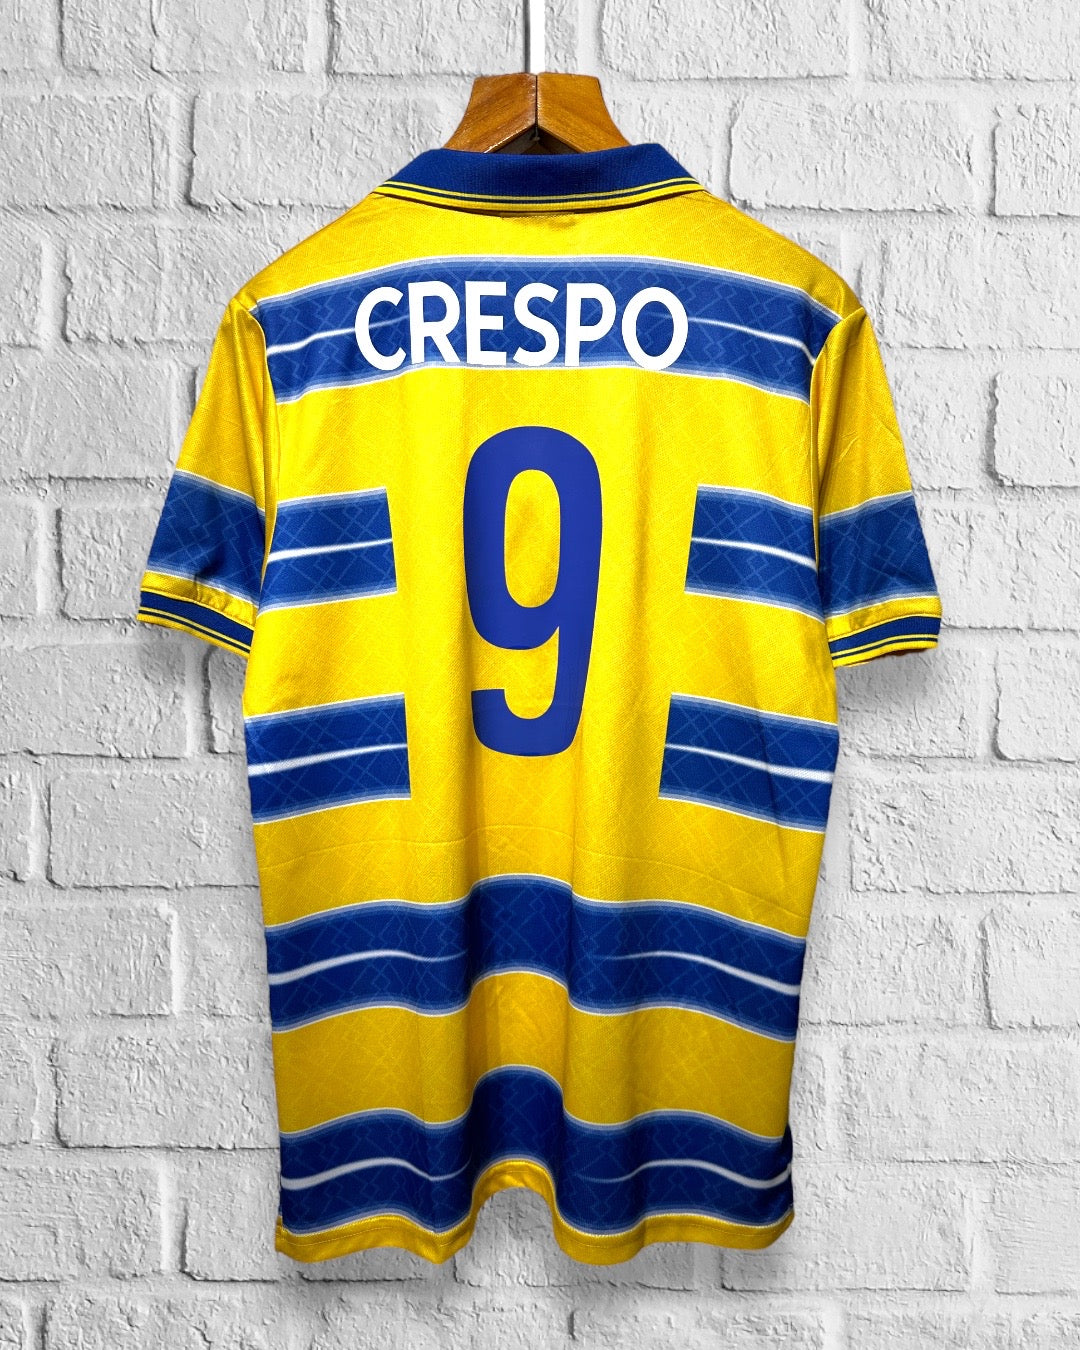 Jersey Retro Parma 1998 1999 Local Crespo dorsal